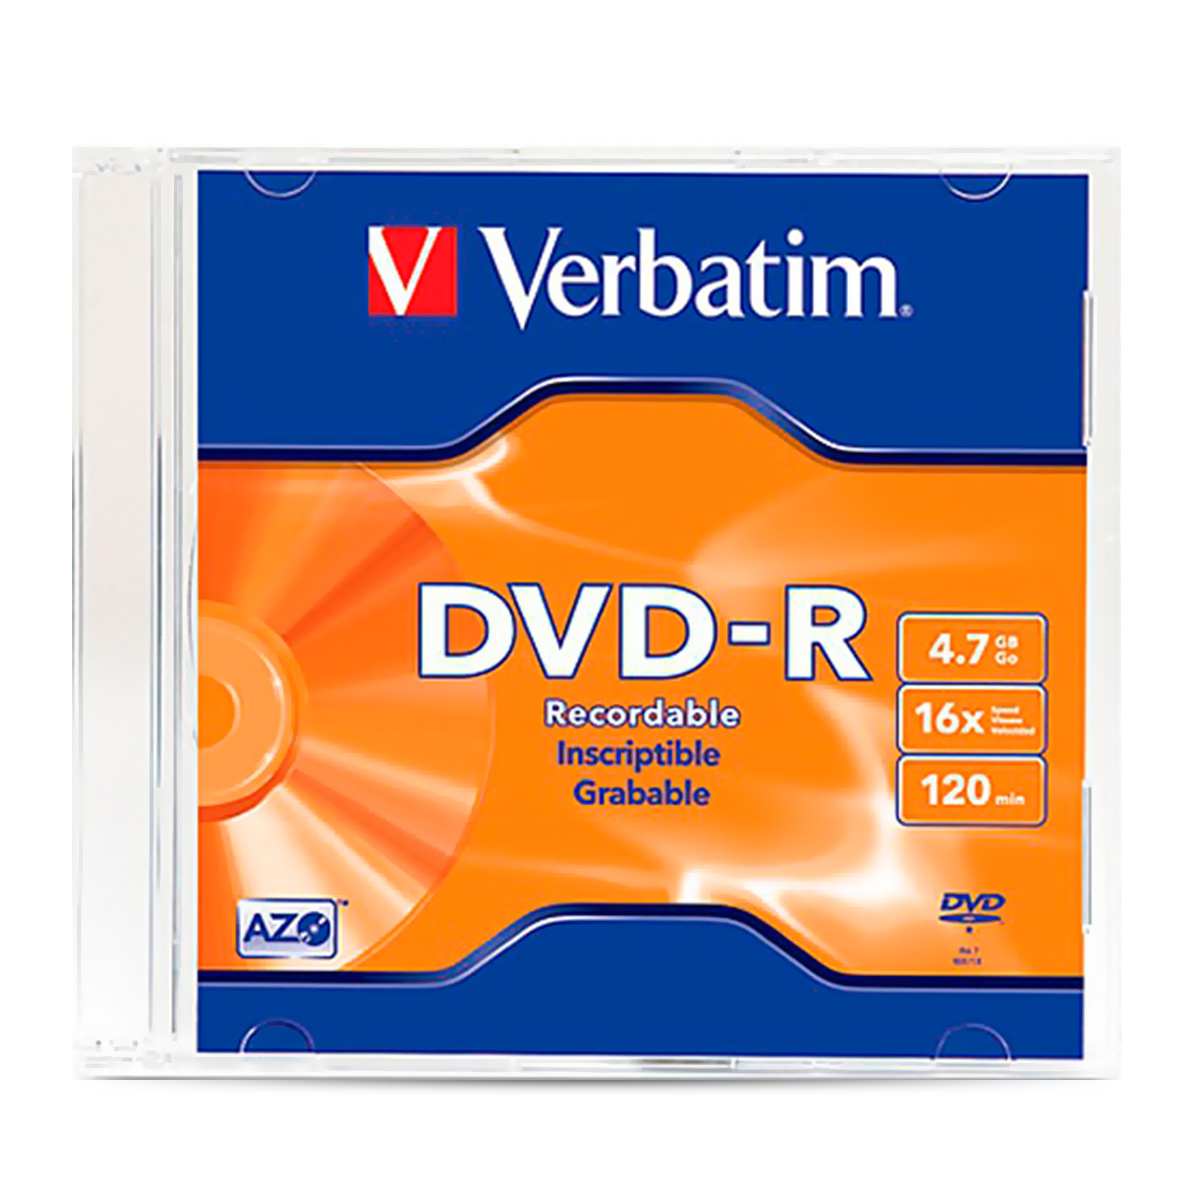 DVD-R Verbatim 95051 / 4.7gb / 120 min. / 1 pieza